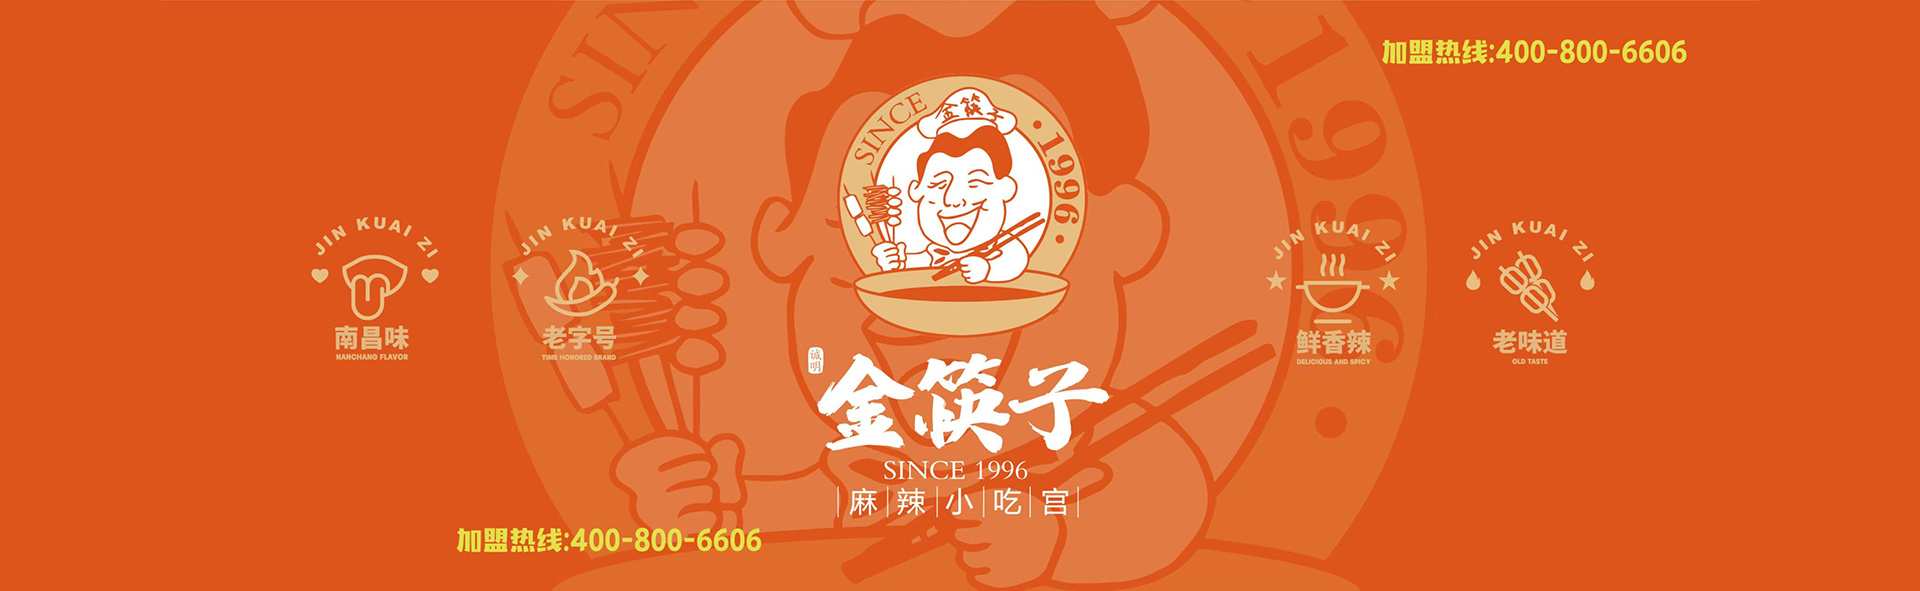 江西金筷子餐饮管理有限公司